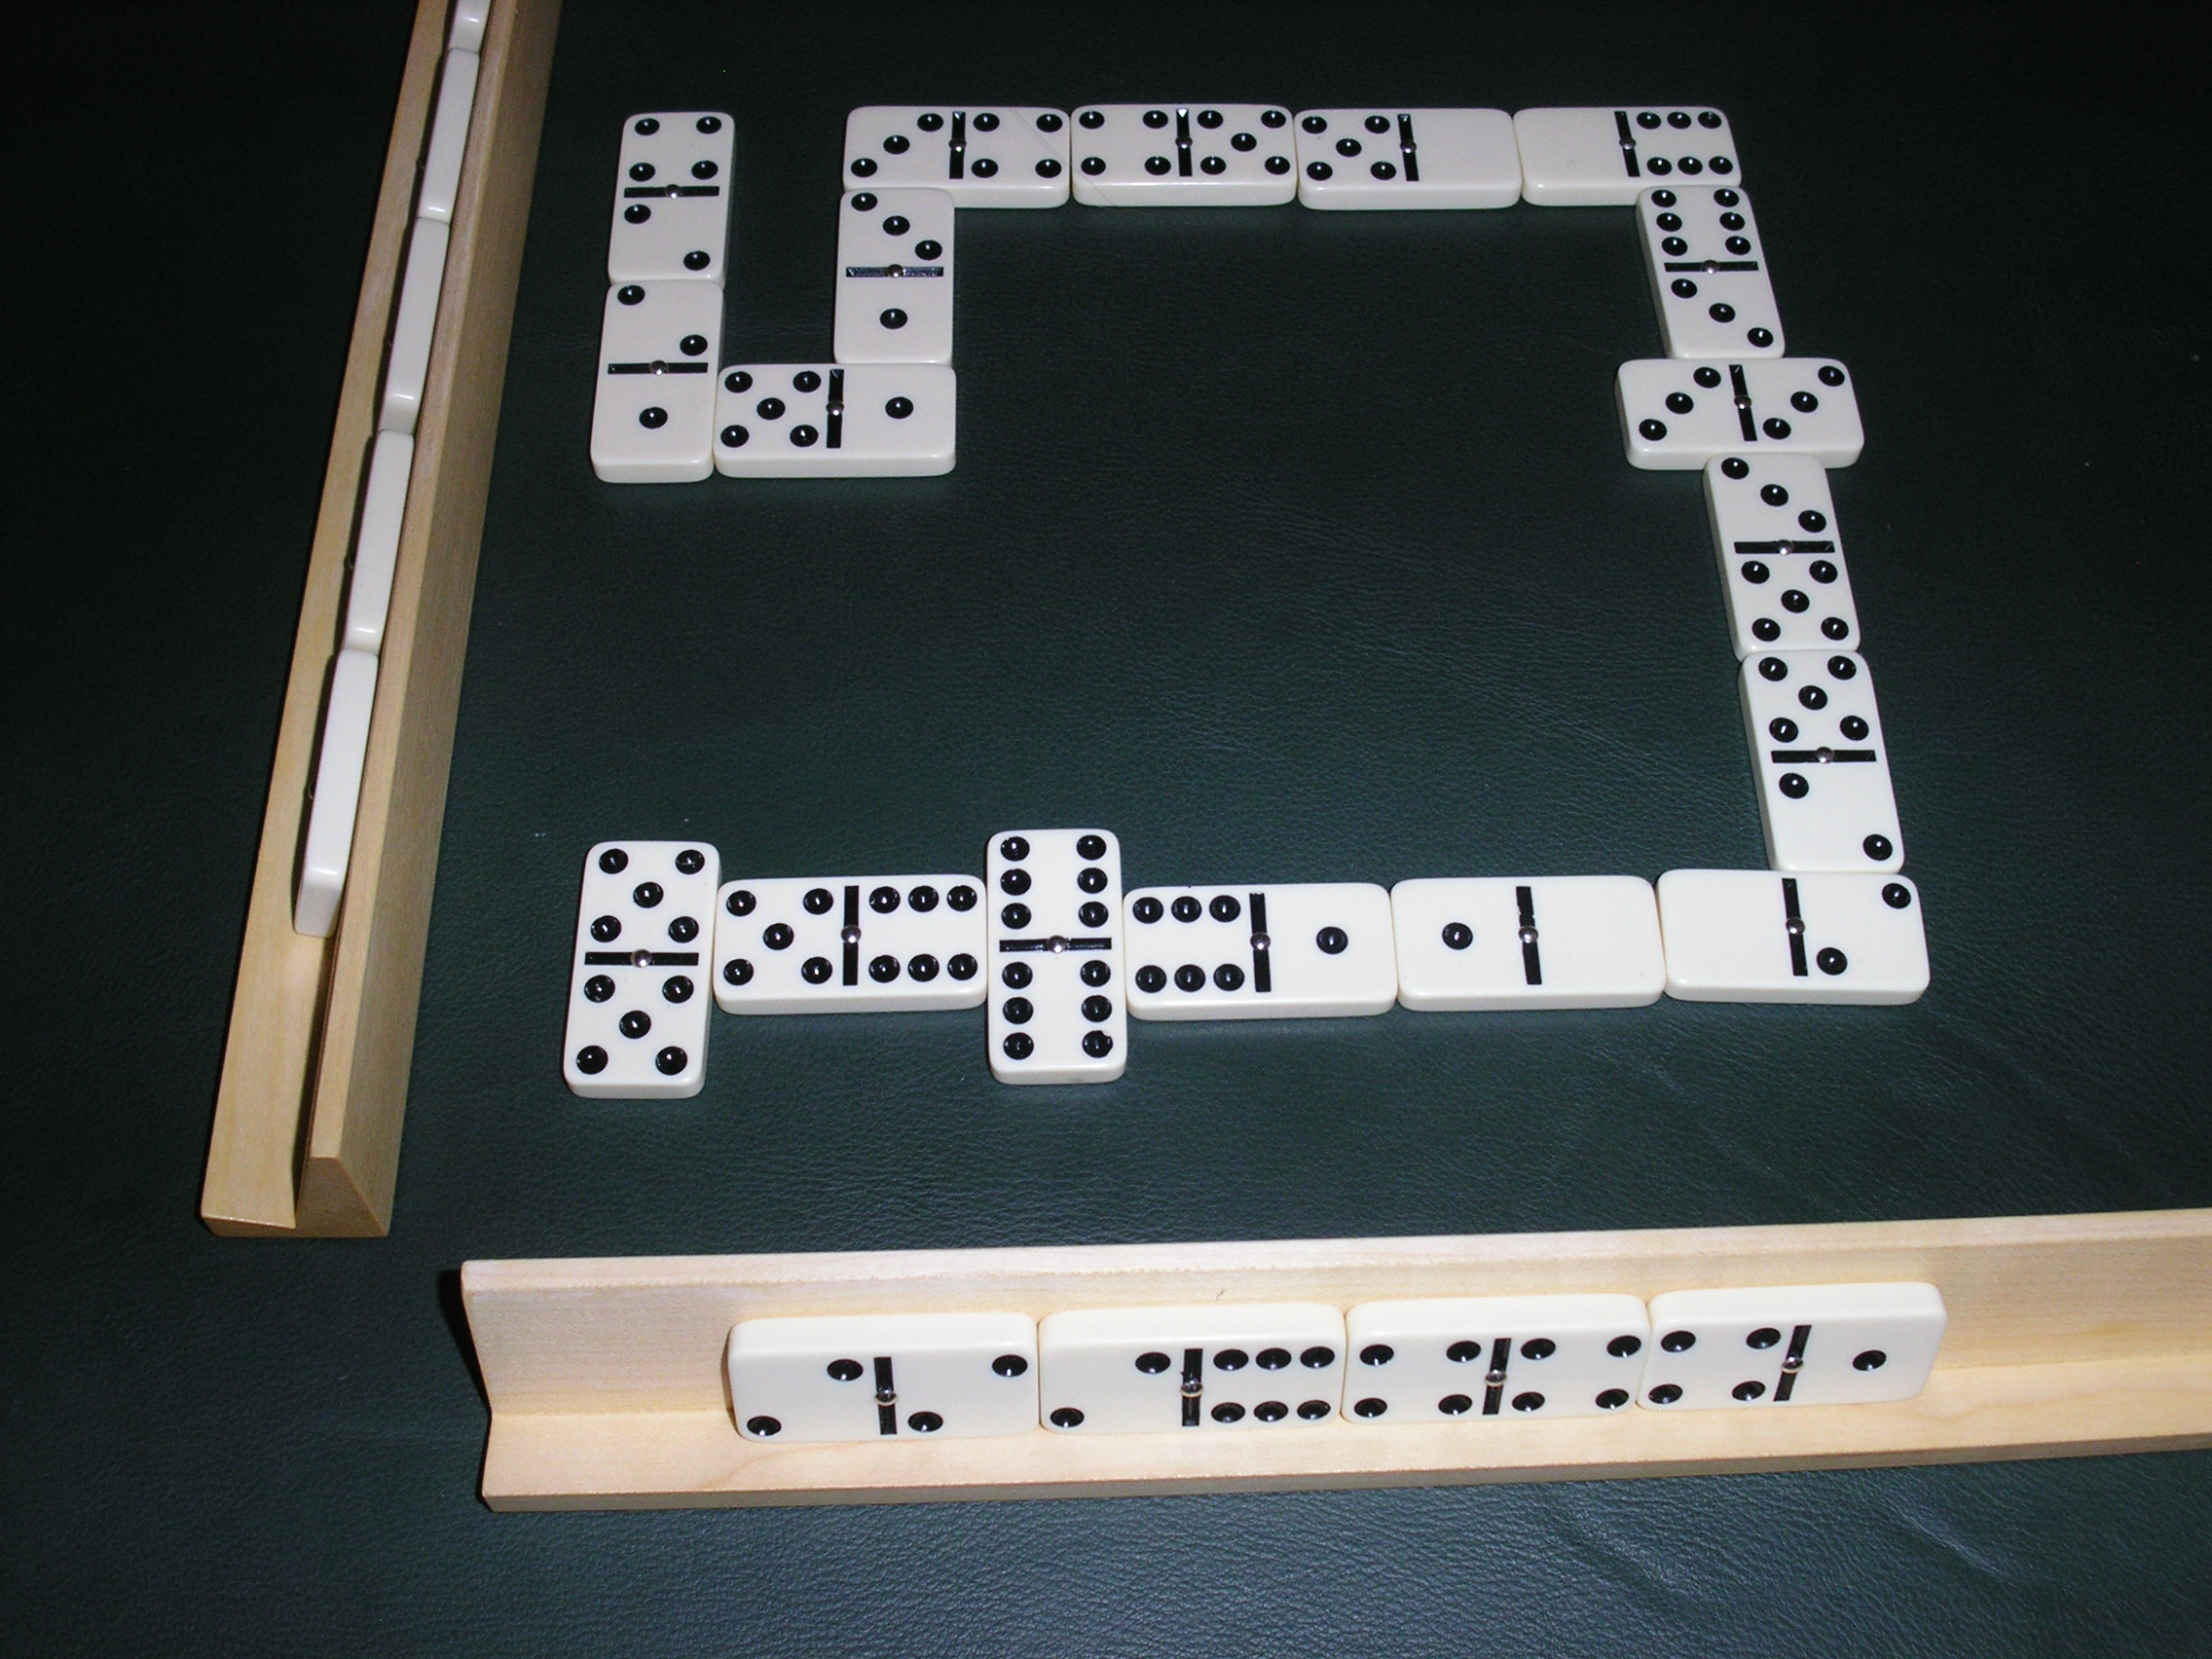 Domino (Spiel)